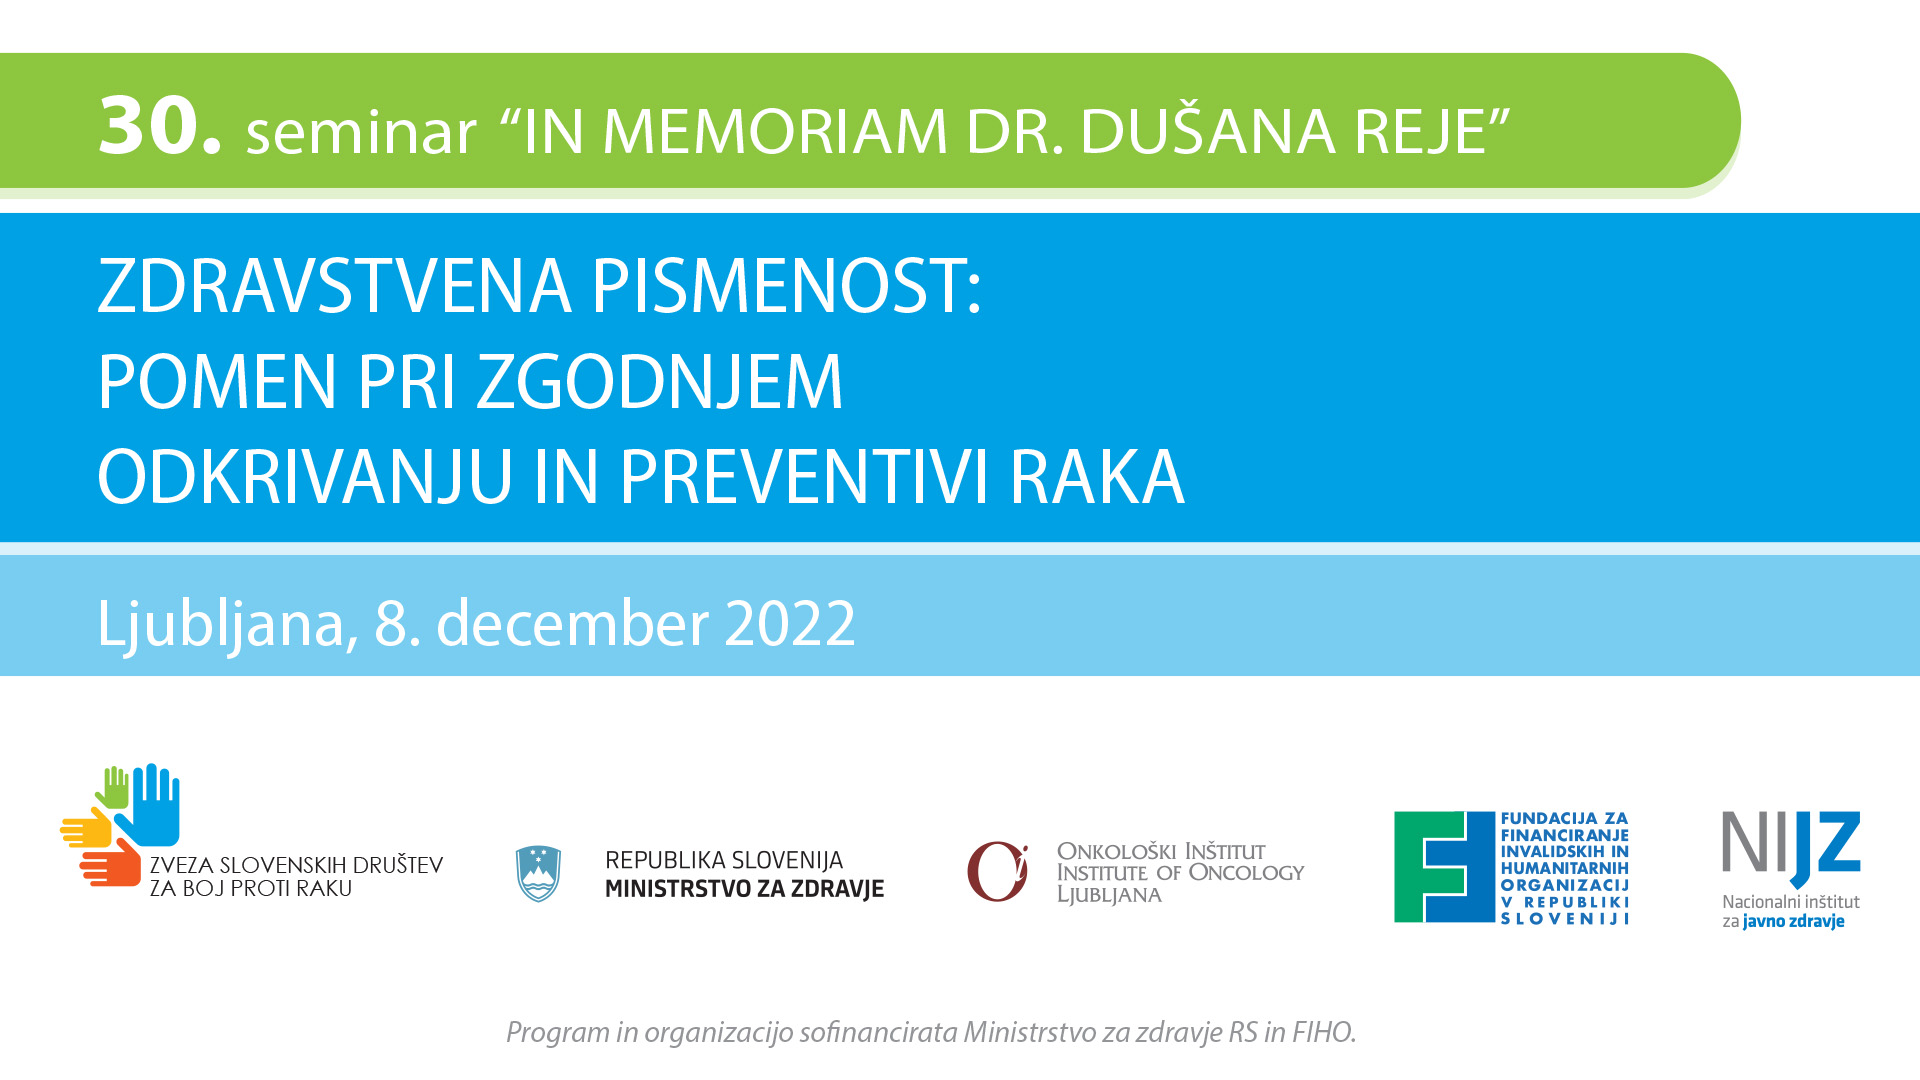 Vabimo vas k ogledu 30. seminarja "In memoriam dr. Dušana Reje"